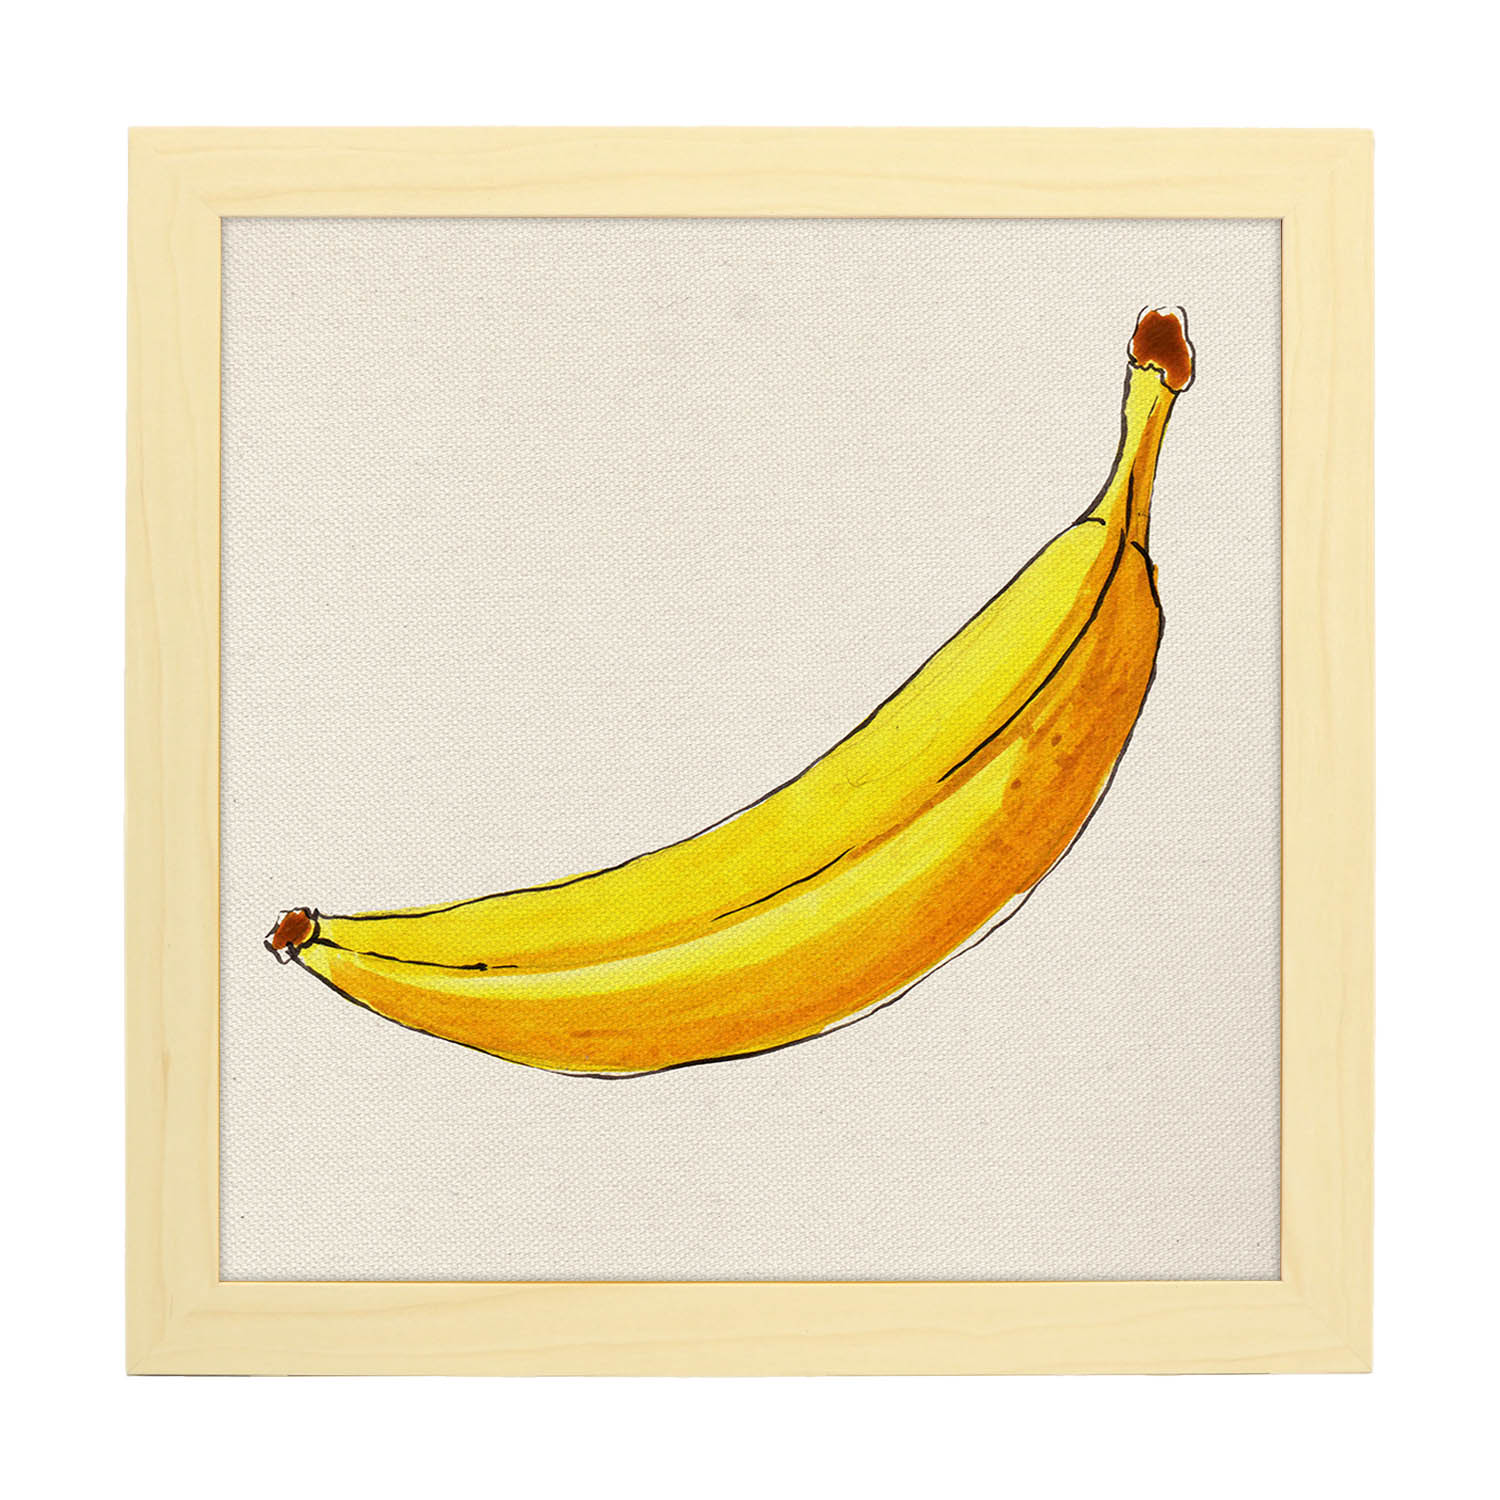 Poster cuadrado de Banana solitaria. Lámina de frutas y verduras de forma cuadrada, ilustrada con dibujos a color.-Artwork-Nacnic-25x25 cm-Marco Madera clara-Nacnic Estudio SL